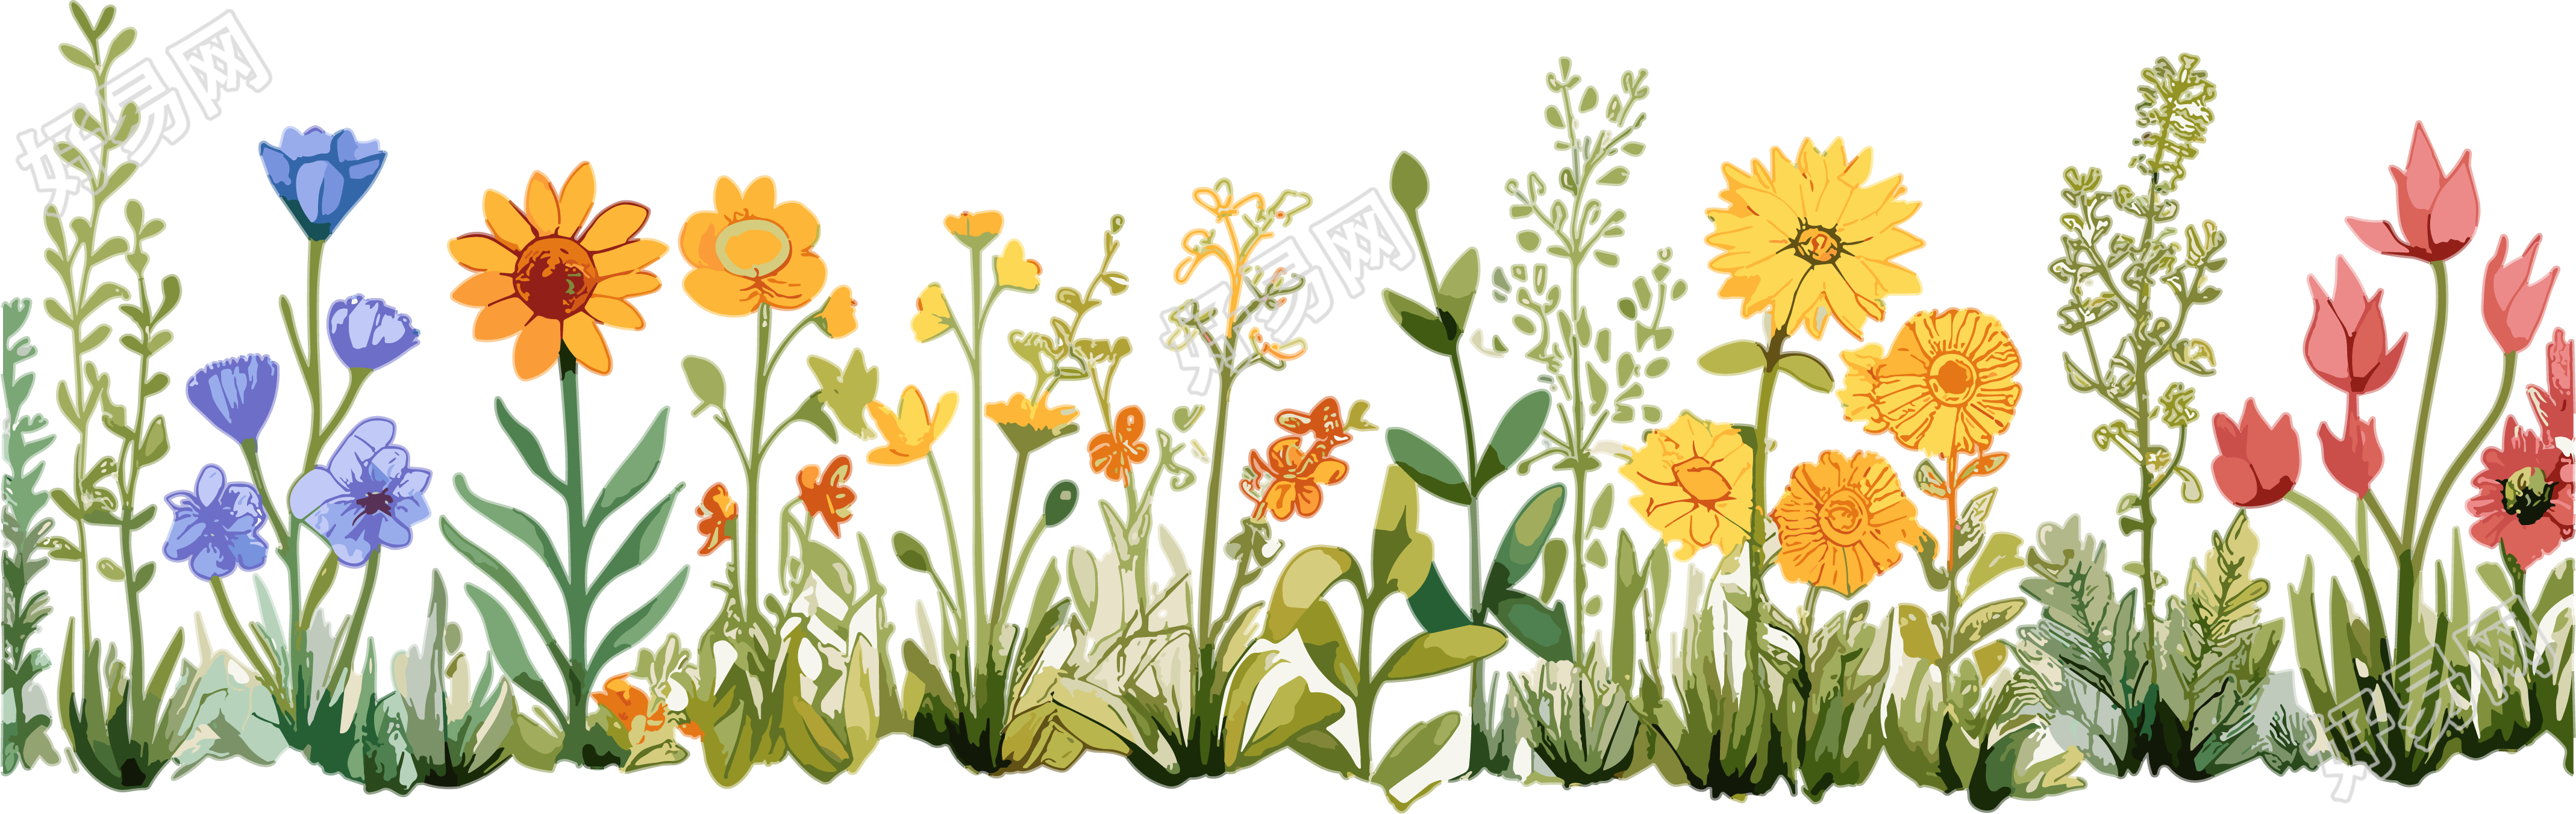 植物花边卡通插画图案素材